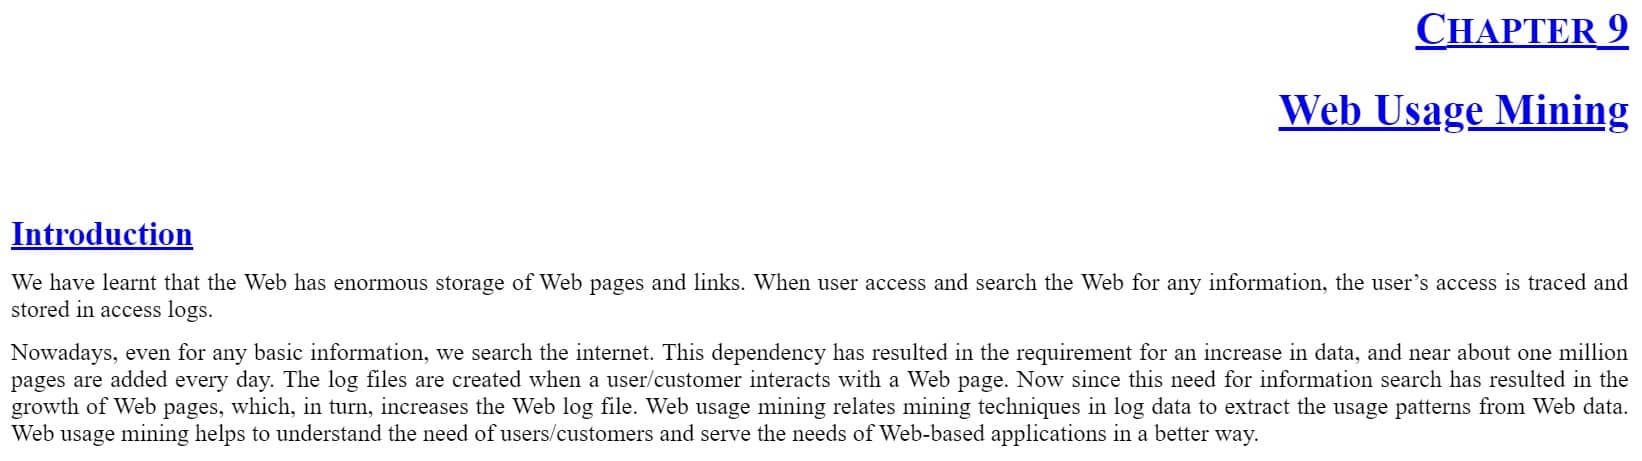 فصل 9 کتاب Web Data Mining with Python